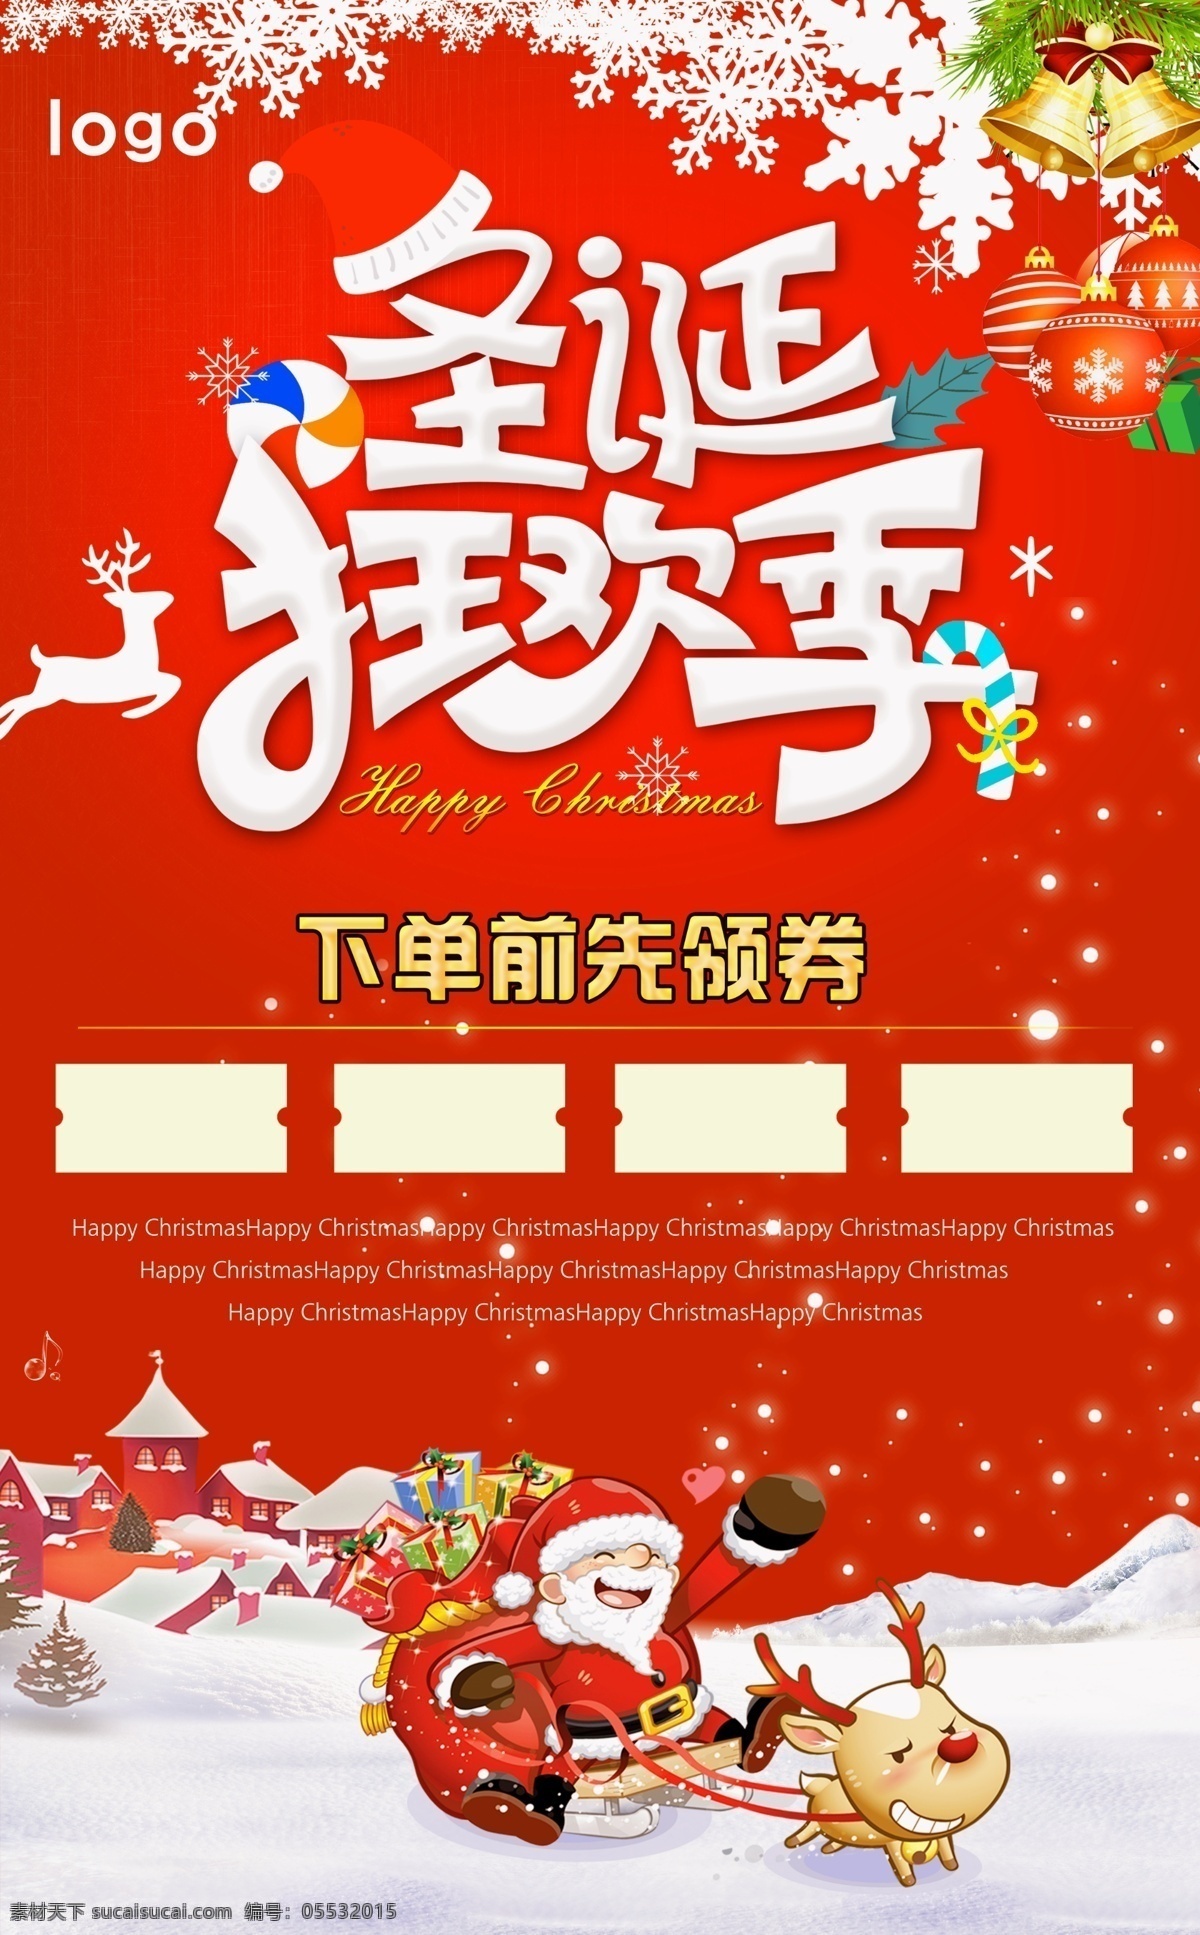 圣诞节 狂欢 季 宣传海报 圣诞狂欢季 圣诞老人 领劵 海报 展板 宣传 促销